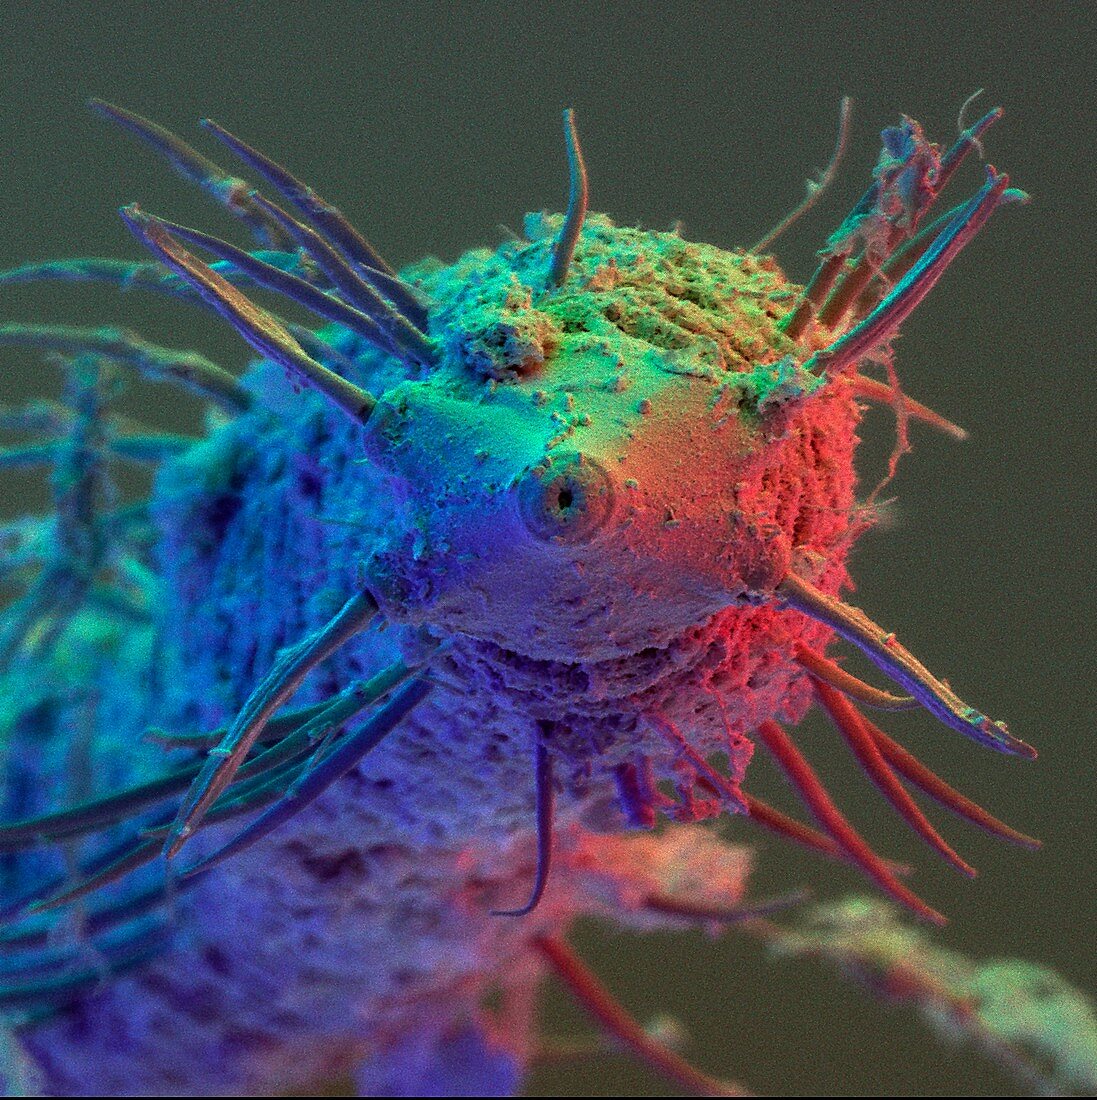 Coloured SEM of nematode worm order Desmoscolecida